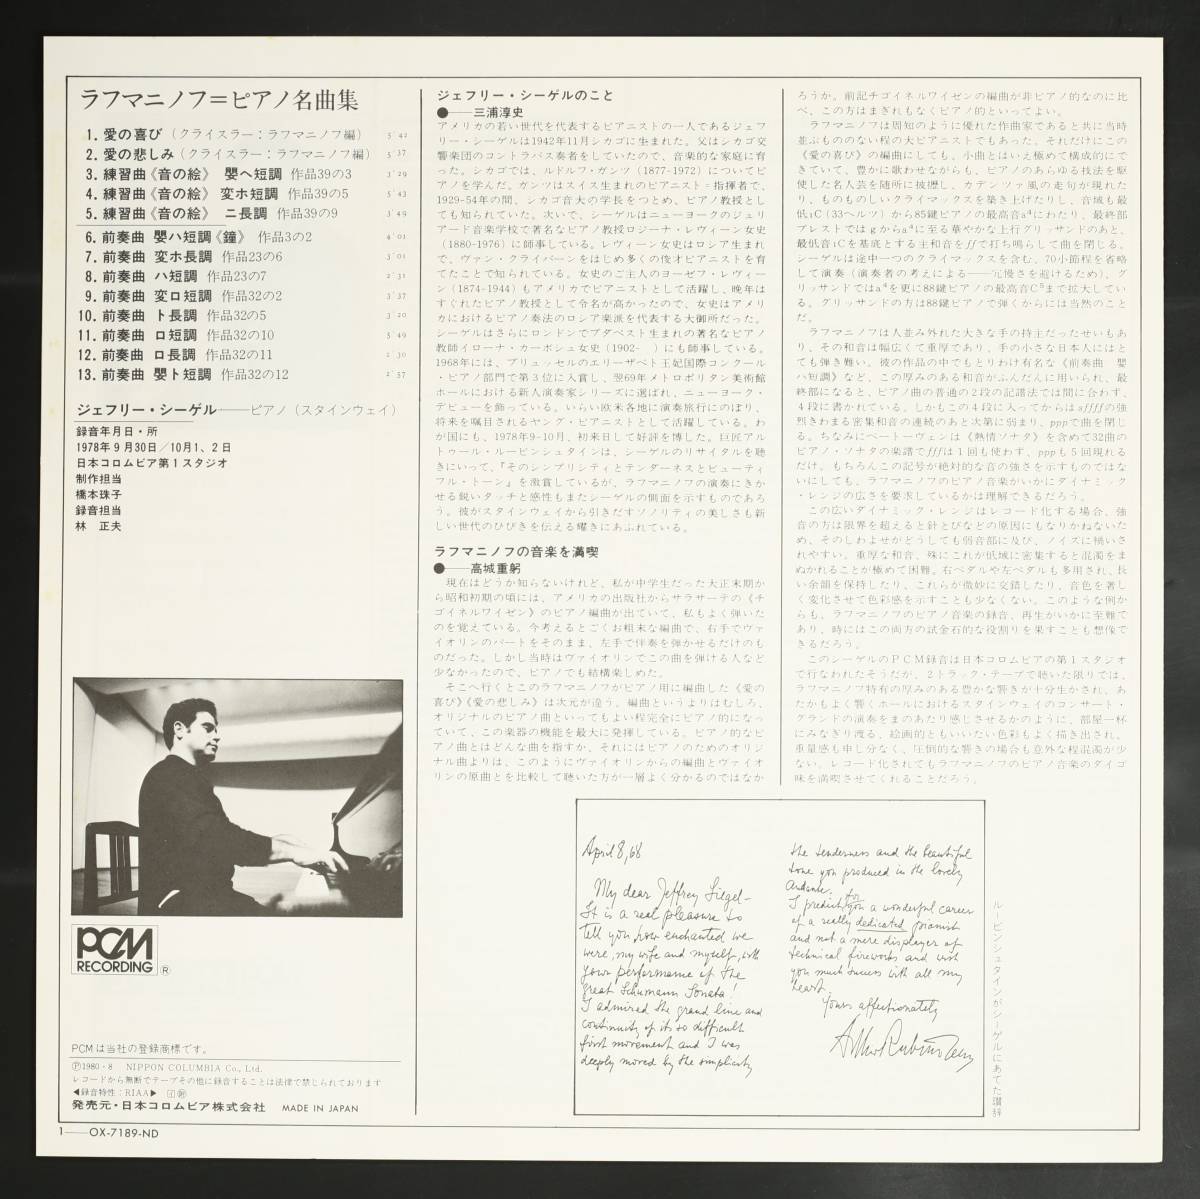 【帯付LP】ジェフリー・シーゲル/ラフマニノフ:ピアノ名曲集(並良品,1978日本録音,Jeffrey Siegel)_画像3